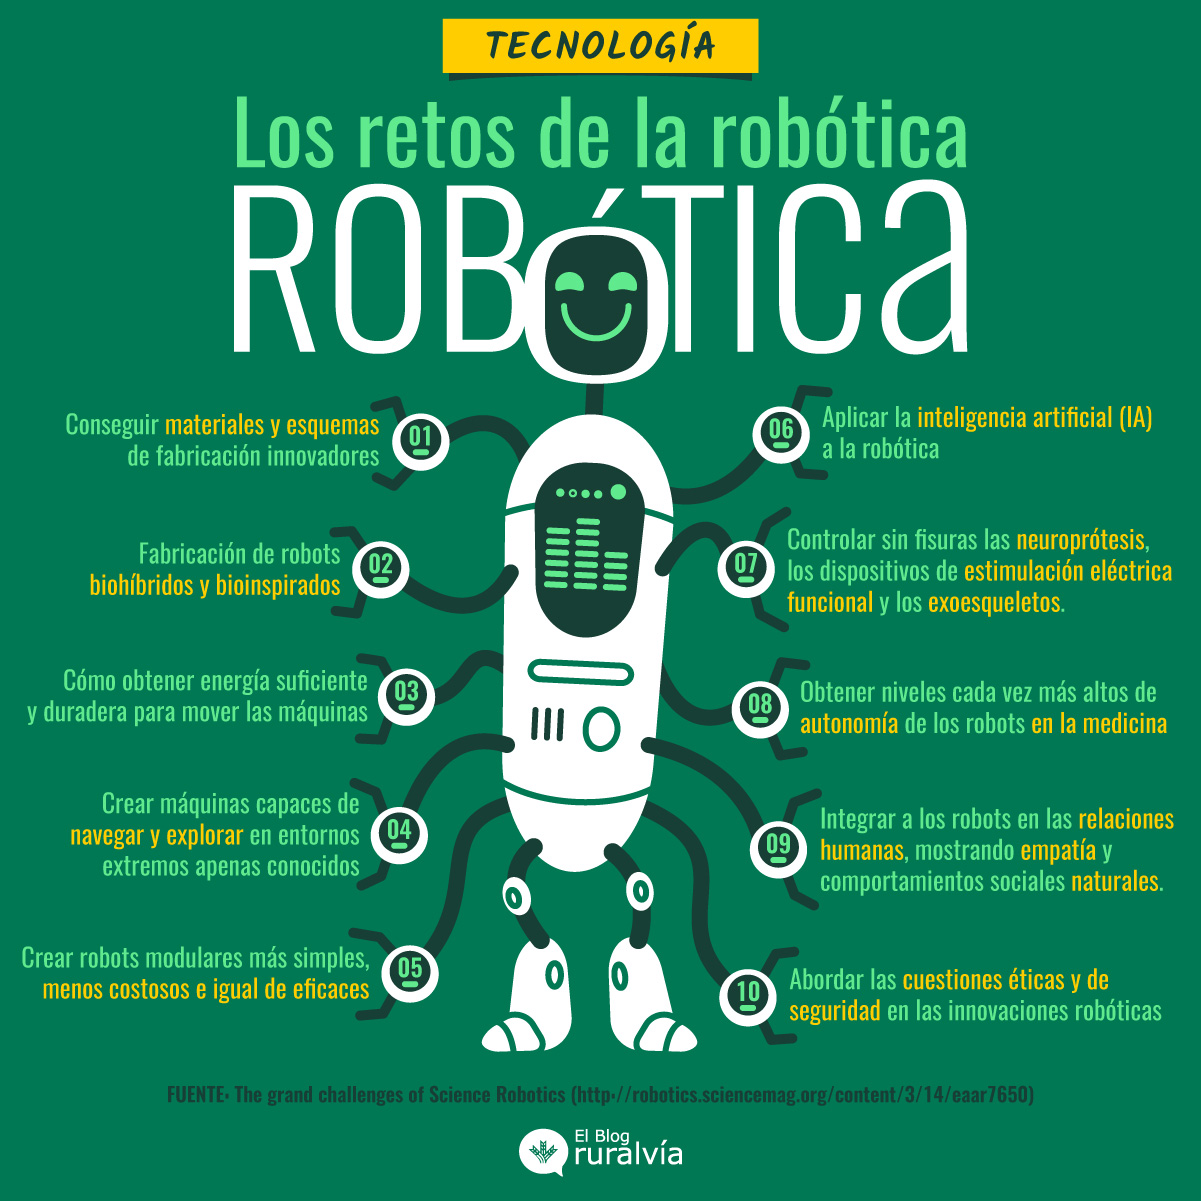 Los retos de la robótica en el futuro